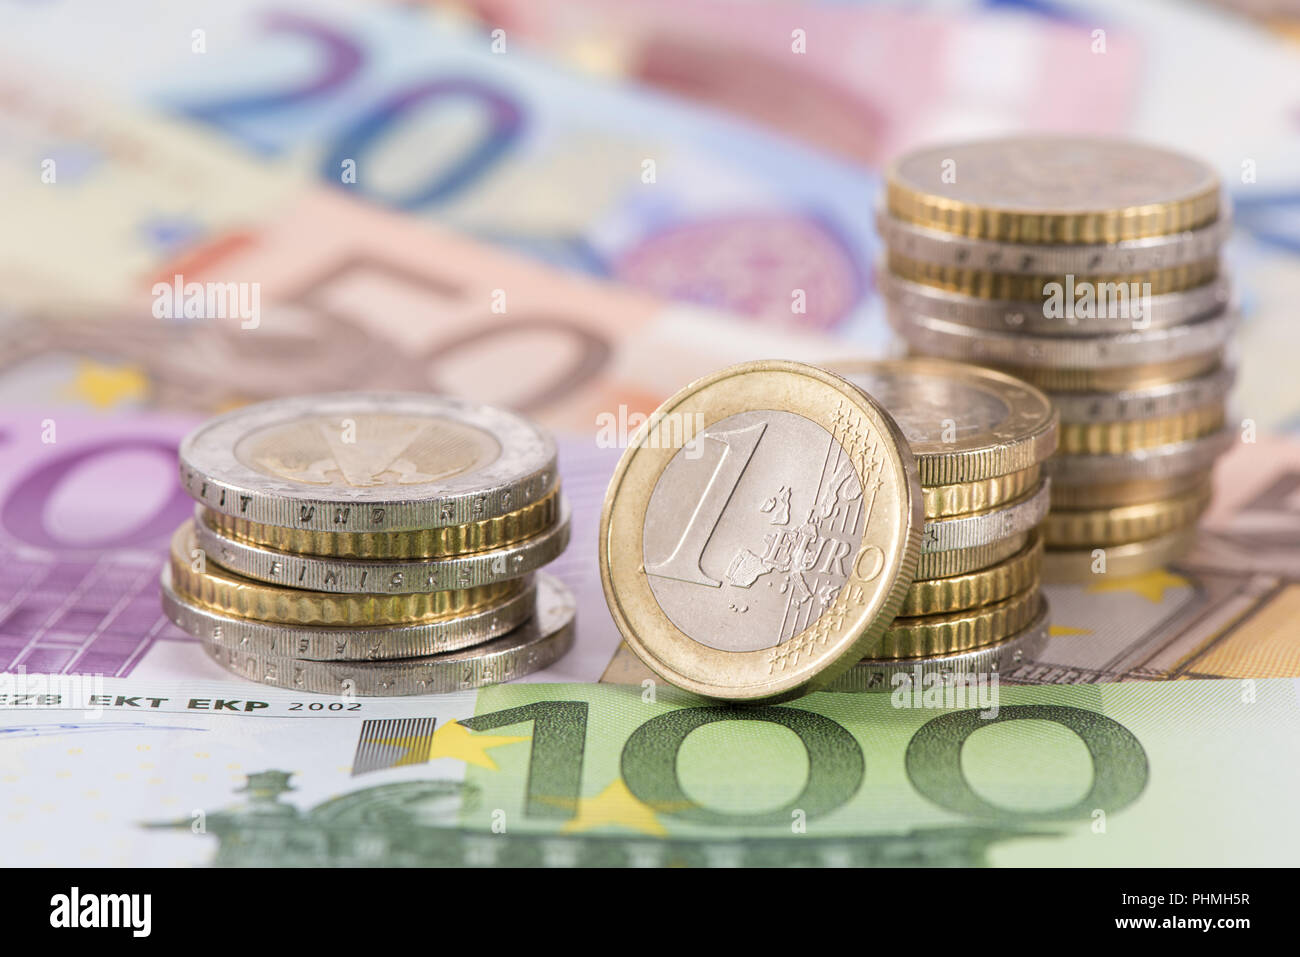 Beaucoup de billets de monnaie européenne fixant sous pièces empilées Banque D'Images